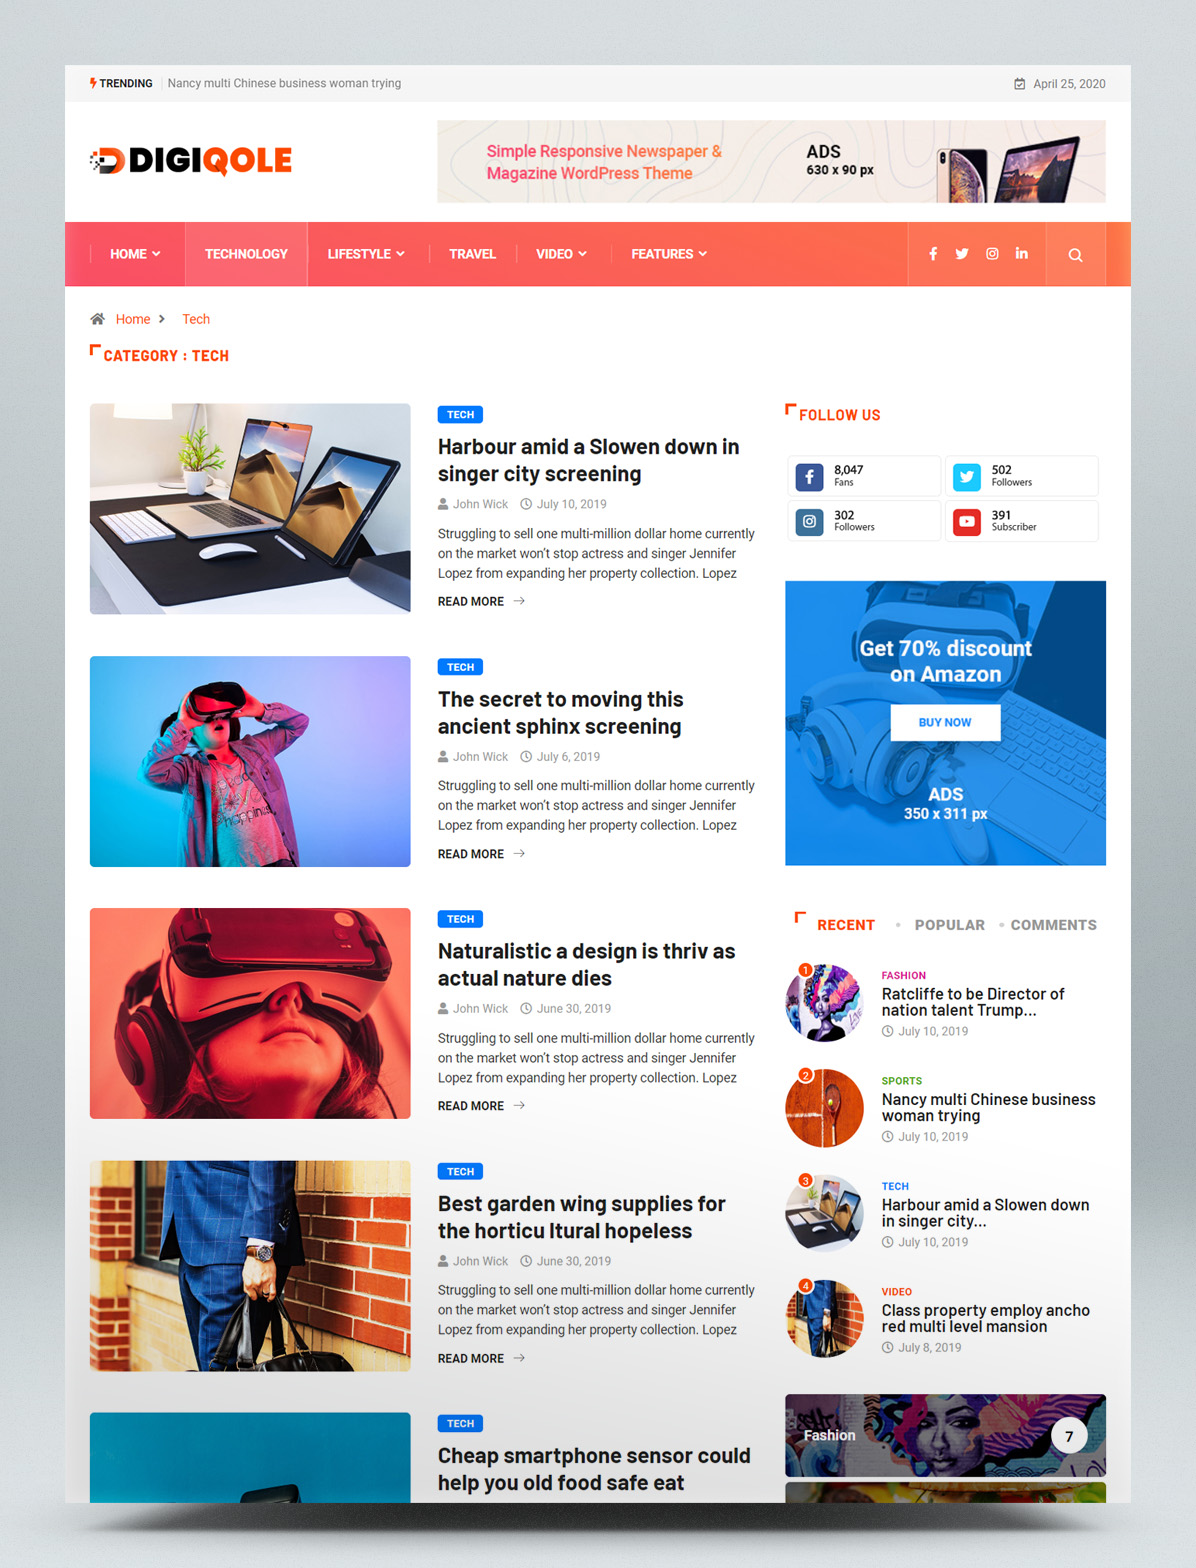 News magazine WordPress theme - Category layout